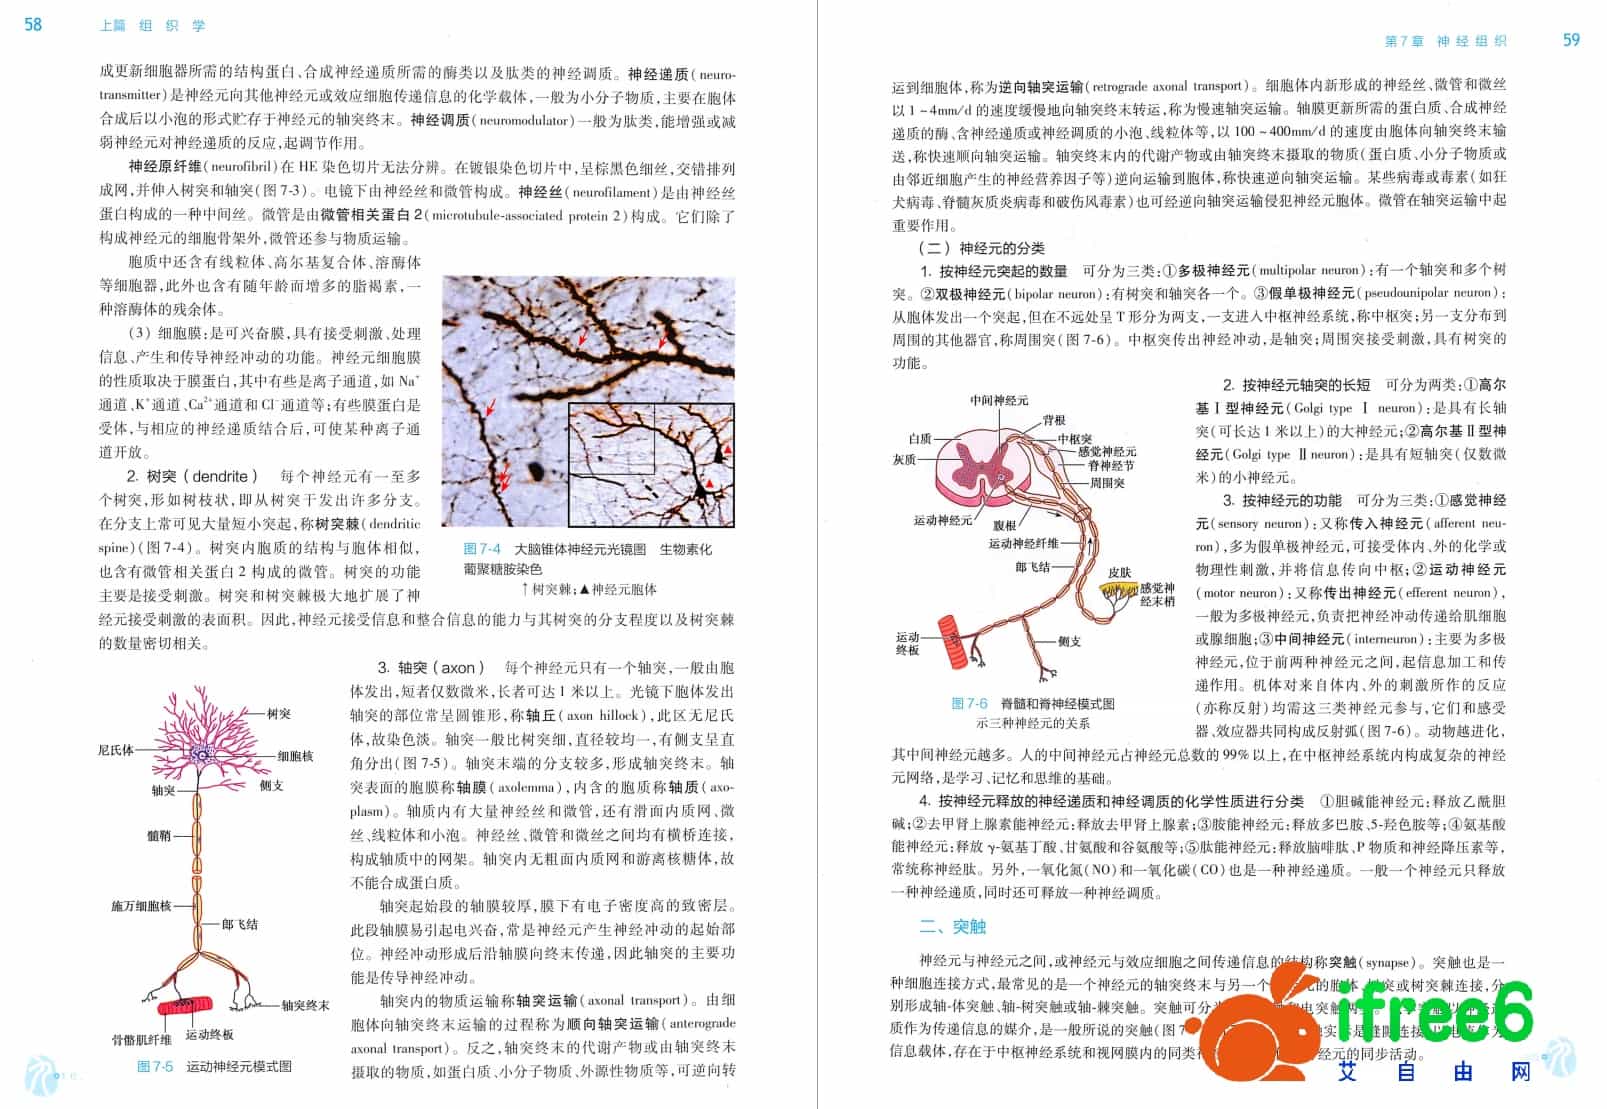 《组织与胚胎学》第9版_李继承,曾园山主编pdf | 艾自由网